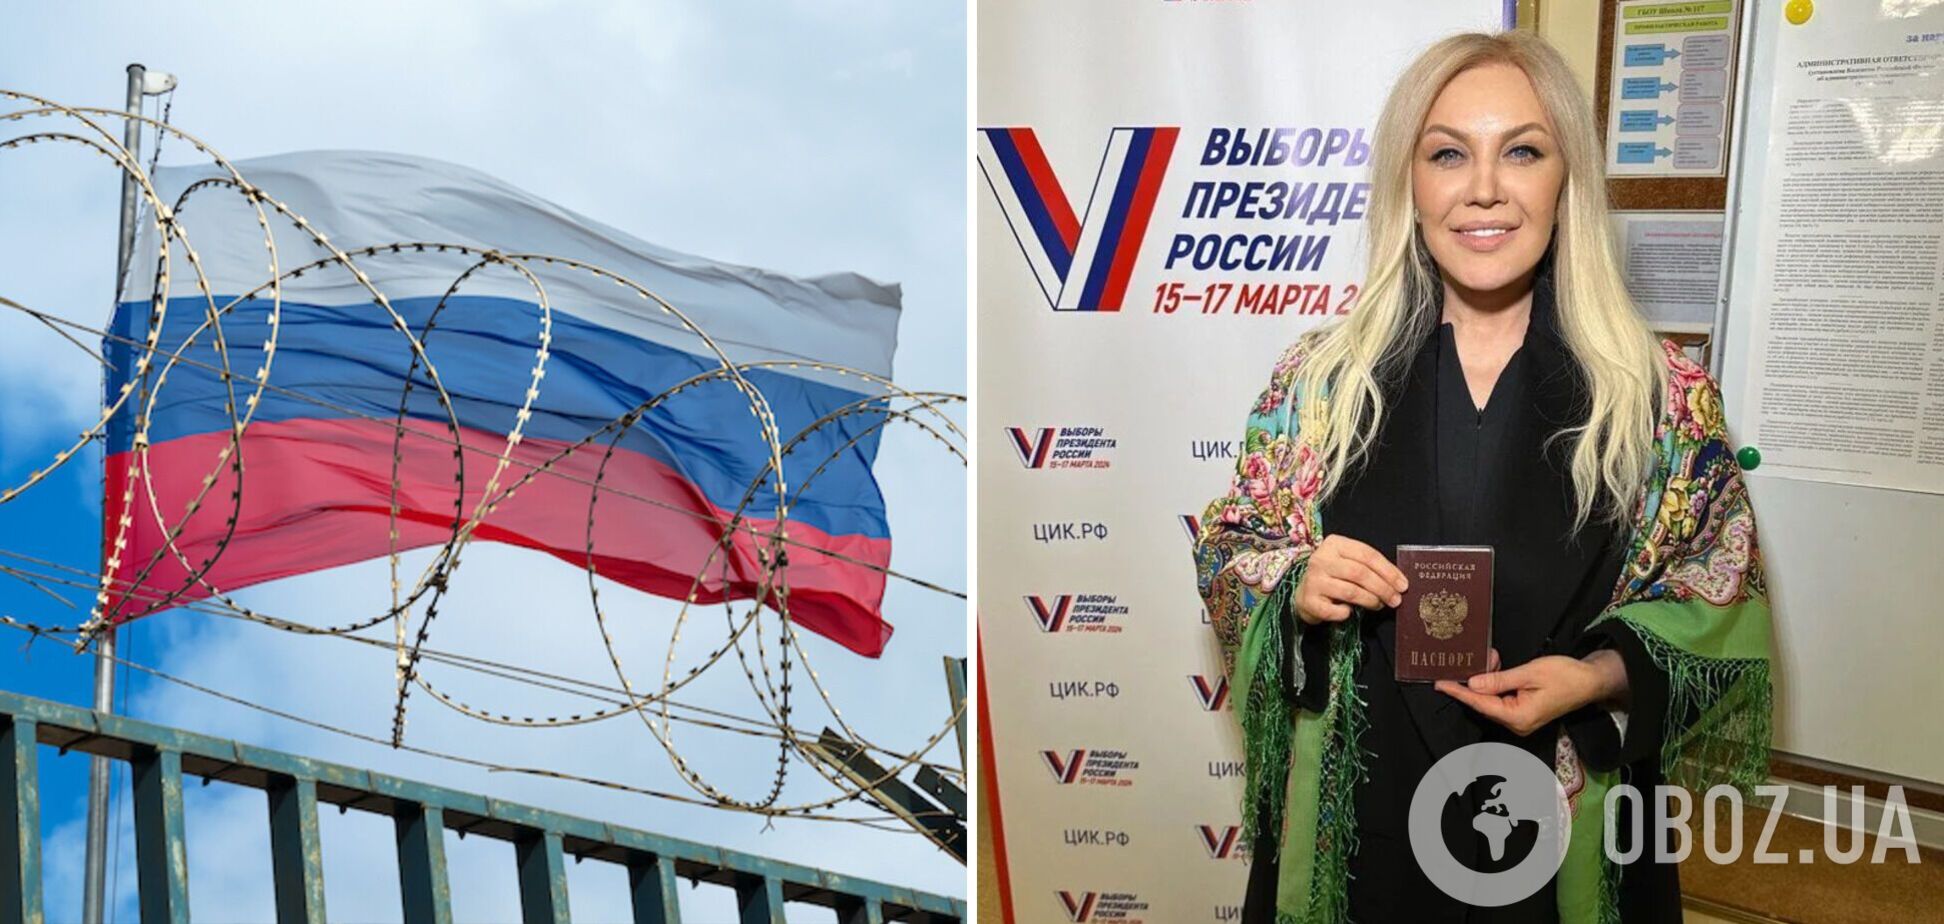 Таисия Повалий, получившая российский паспорт, на росТВ посочувствовала украинцам и похвалила оккупантов за то, что ее 'спасли'